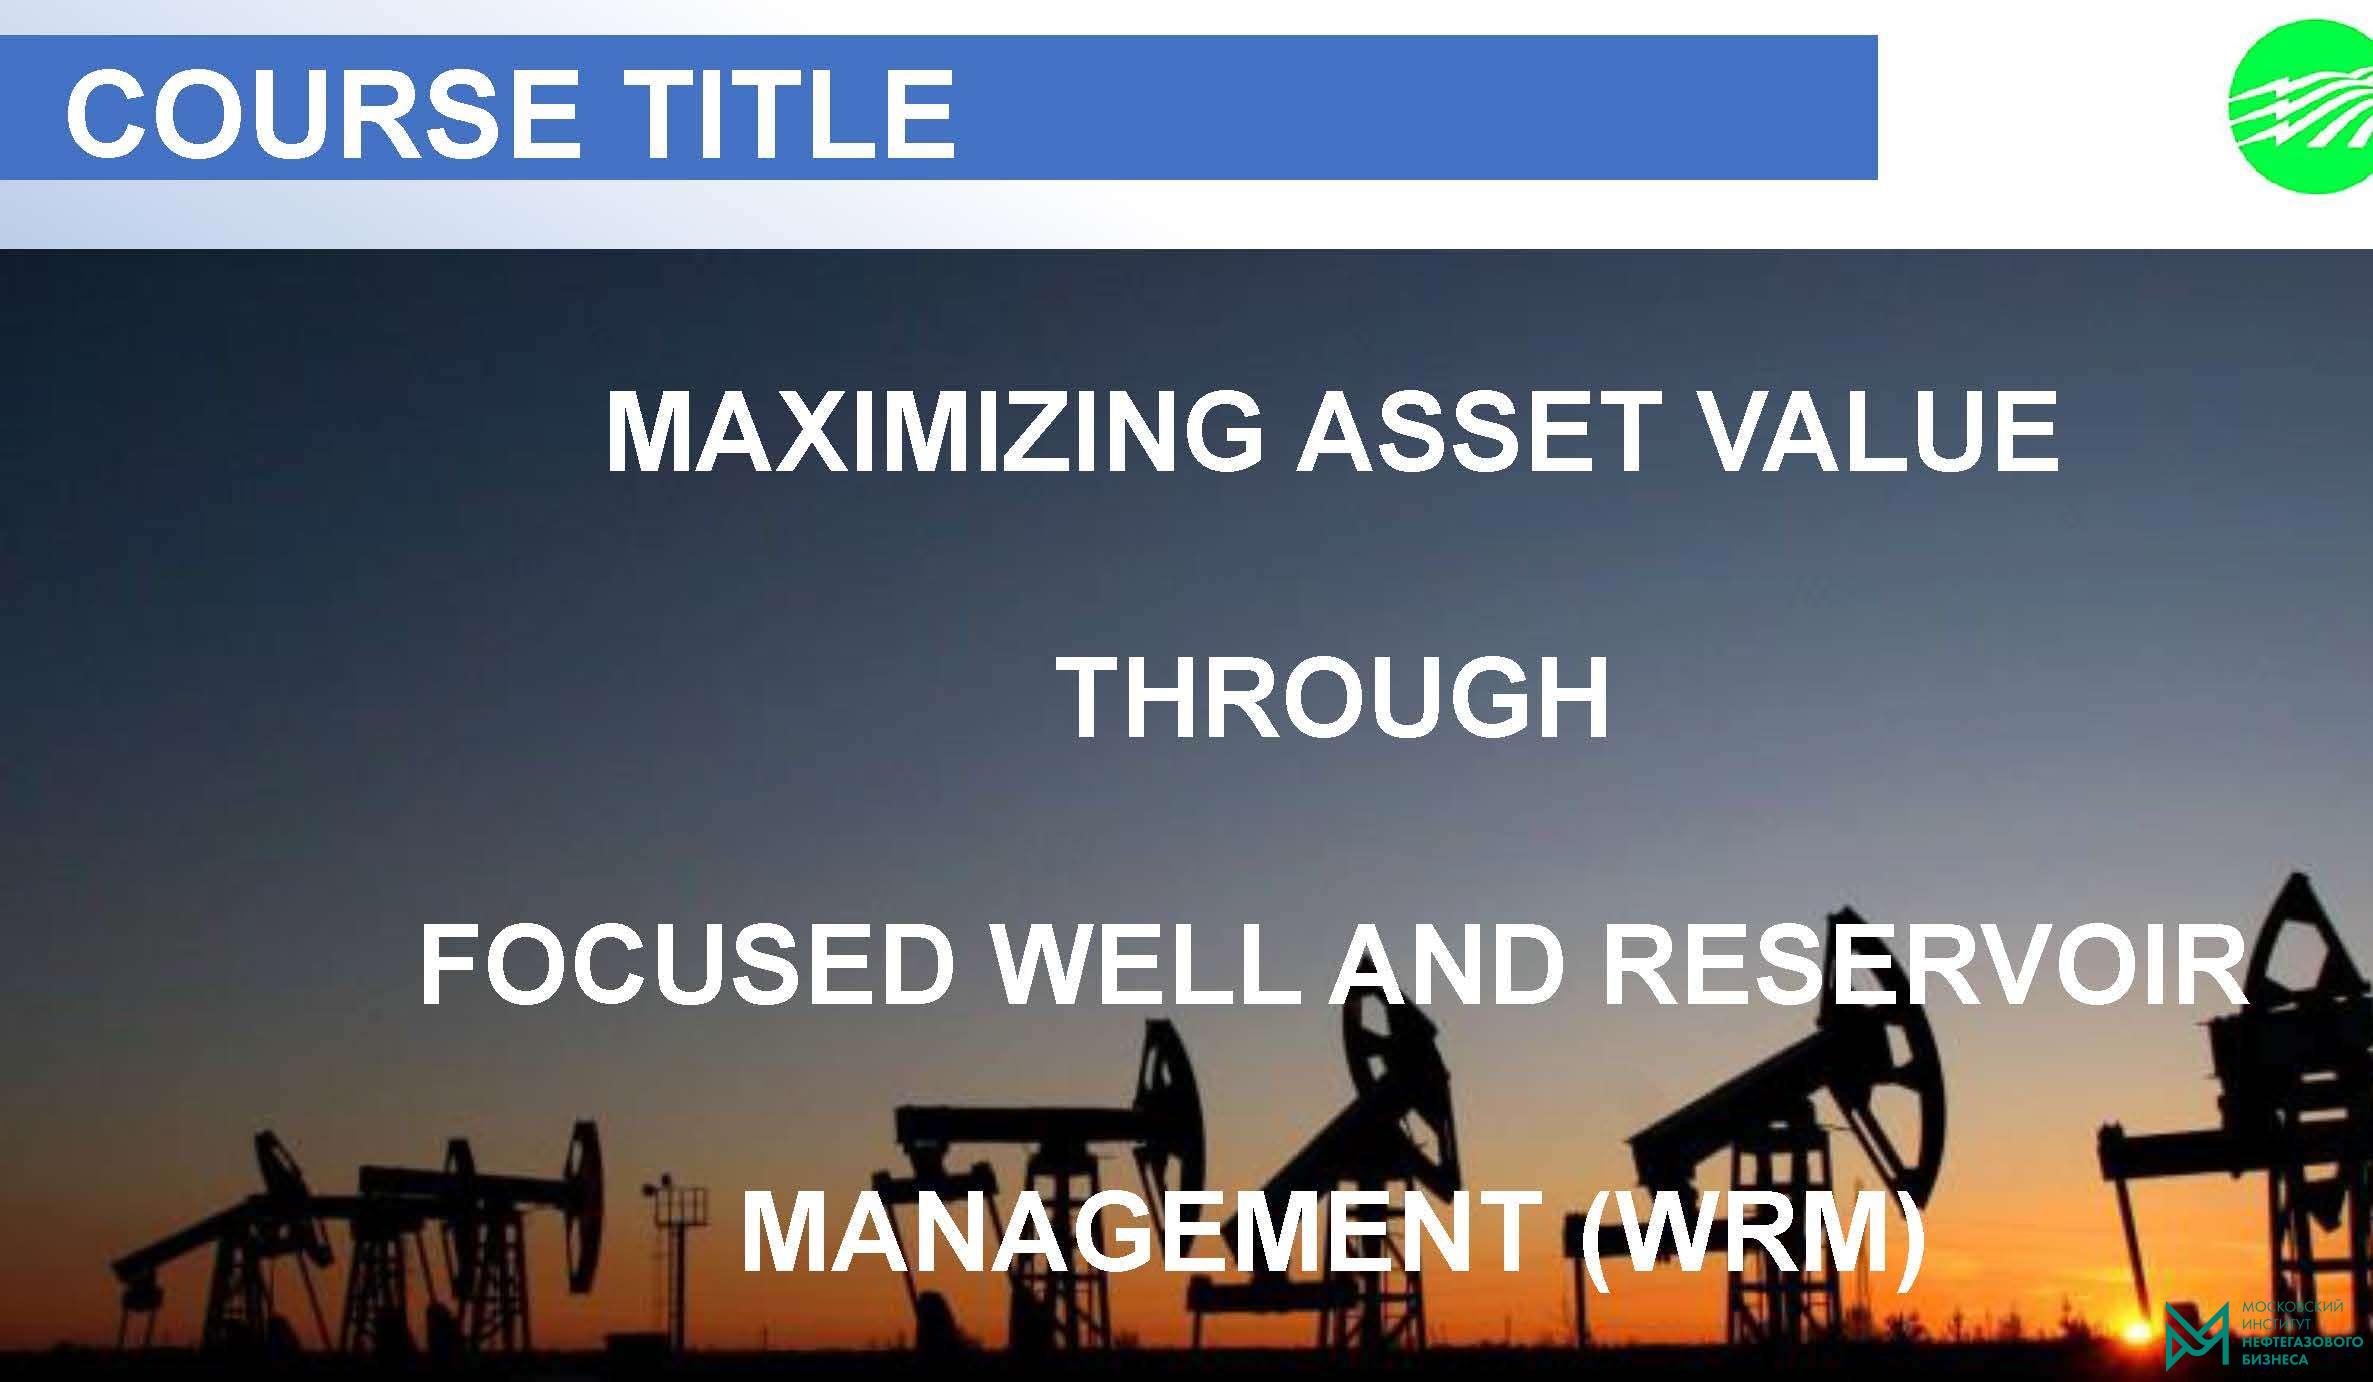 Управление проектами и разработка высокоэффективных нефтегазовых активов